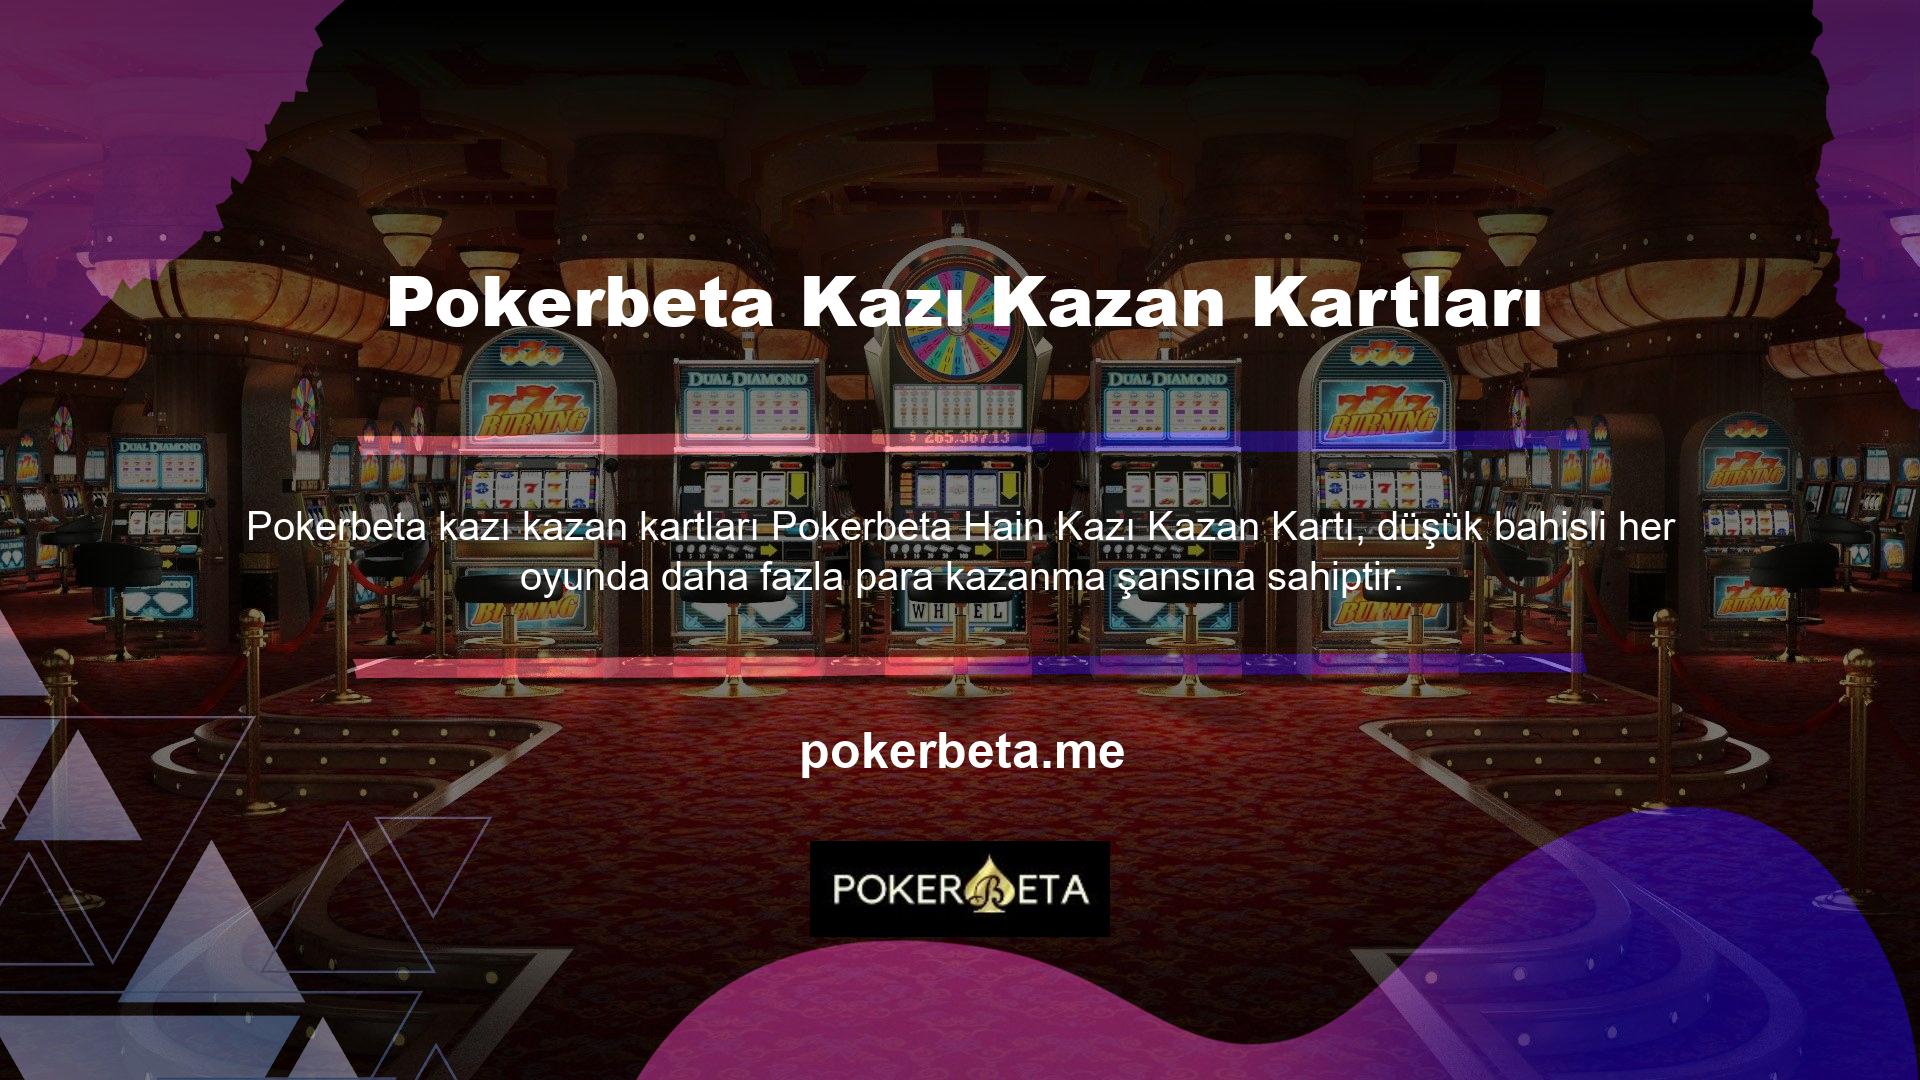 Pokerbeta online casino sitesine üye olmak ve canlı casino oyunlarından gelir elde etmek çok kolaydır